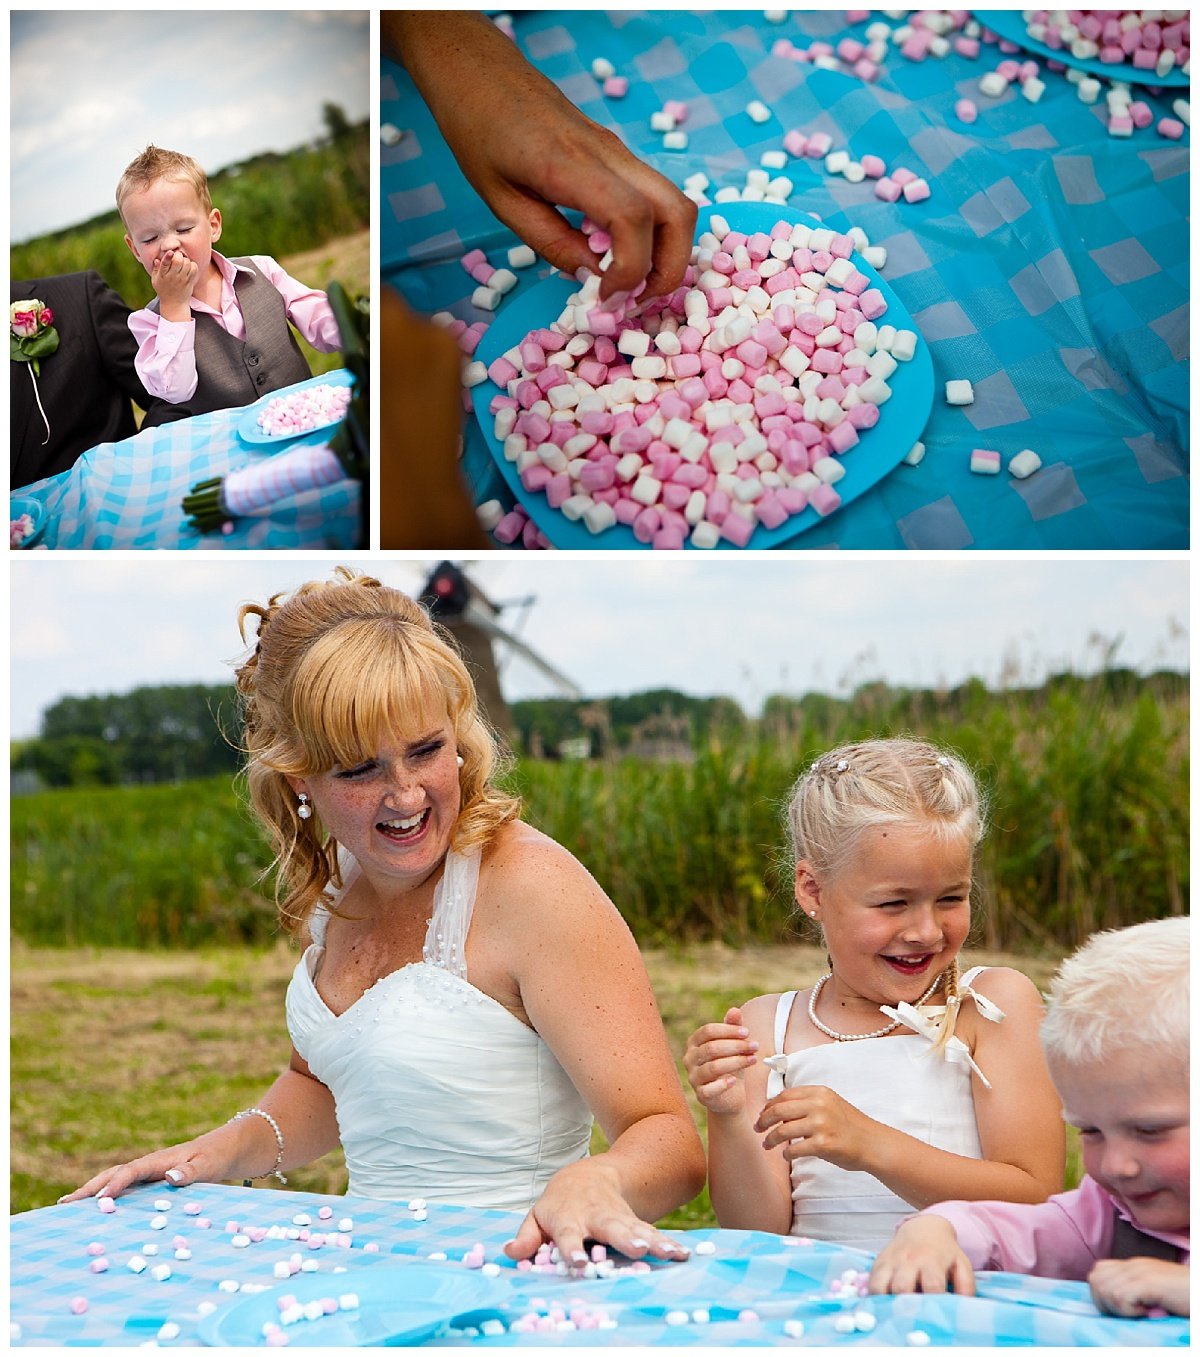 trouwshoot-bruidsfotografie-trouwfoto-feestfotografie-trouwreportage-Alex en Evelyn535.jpg